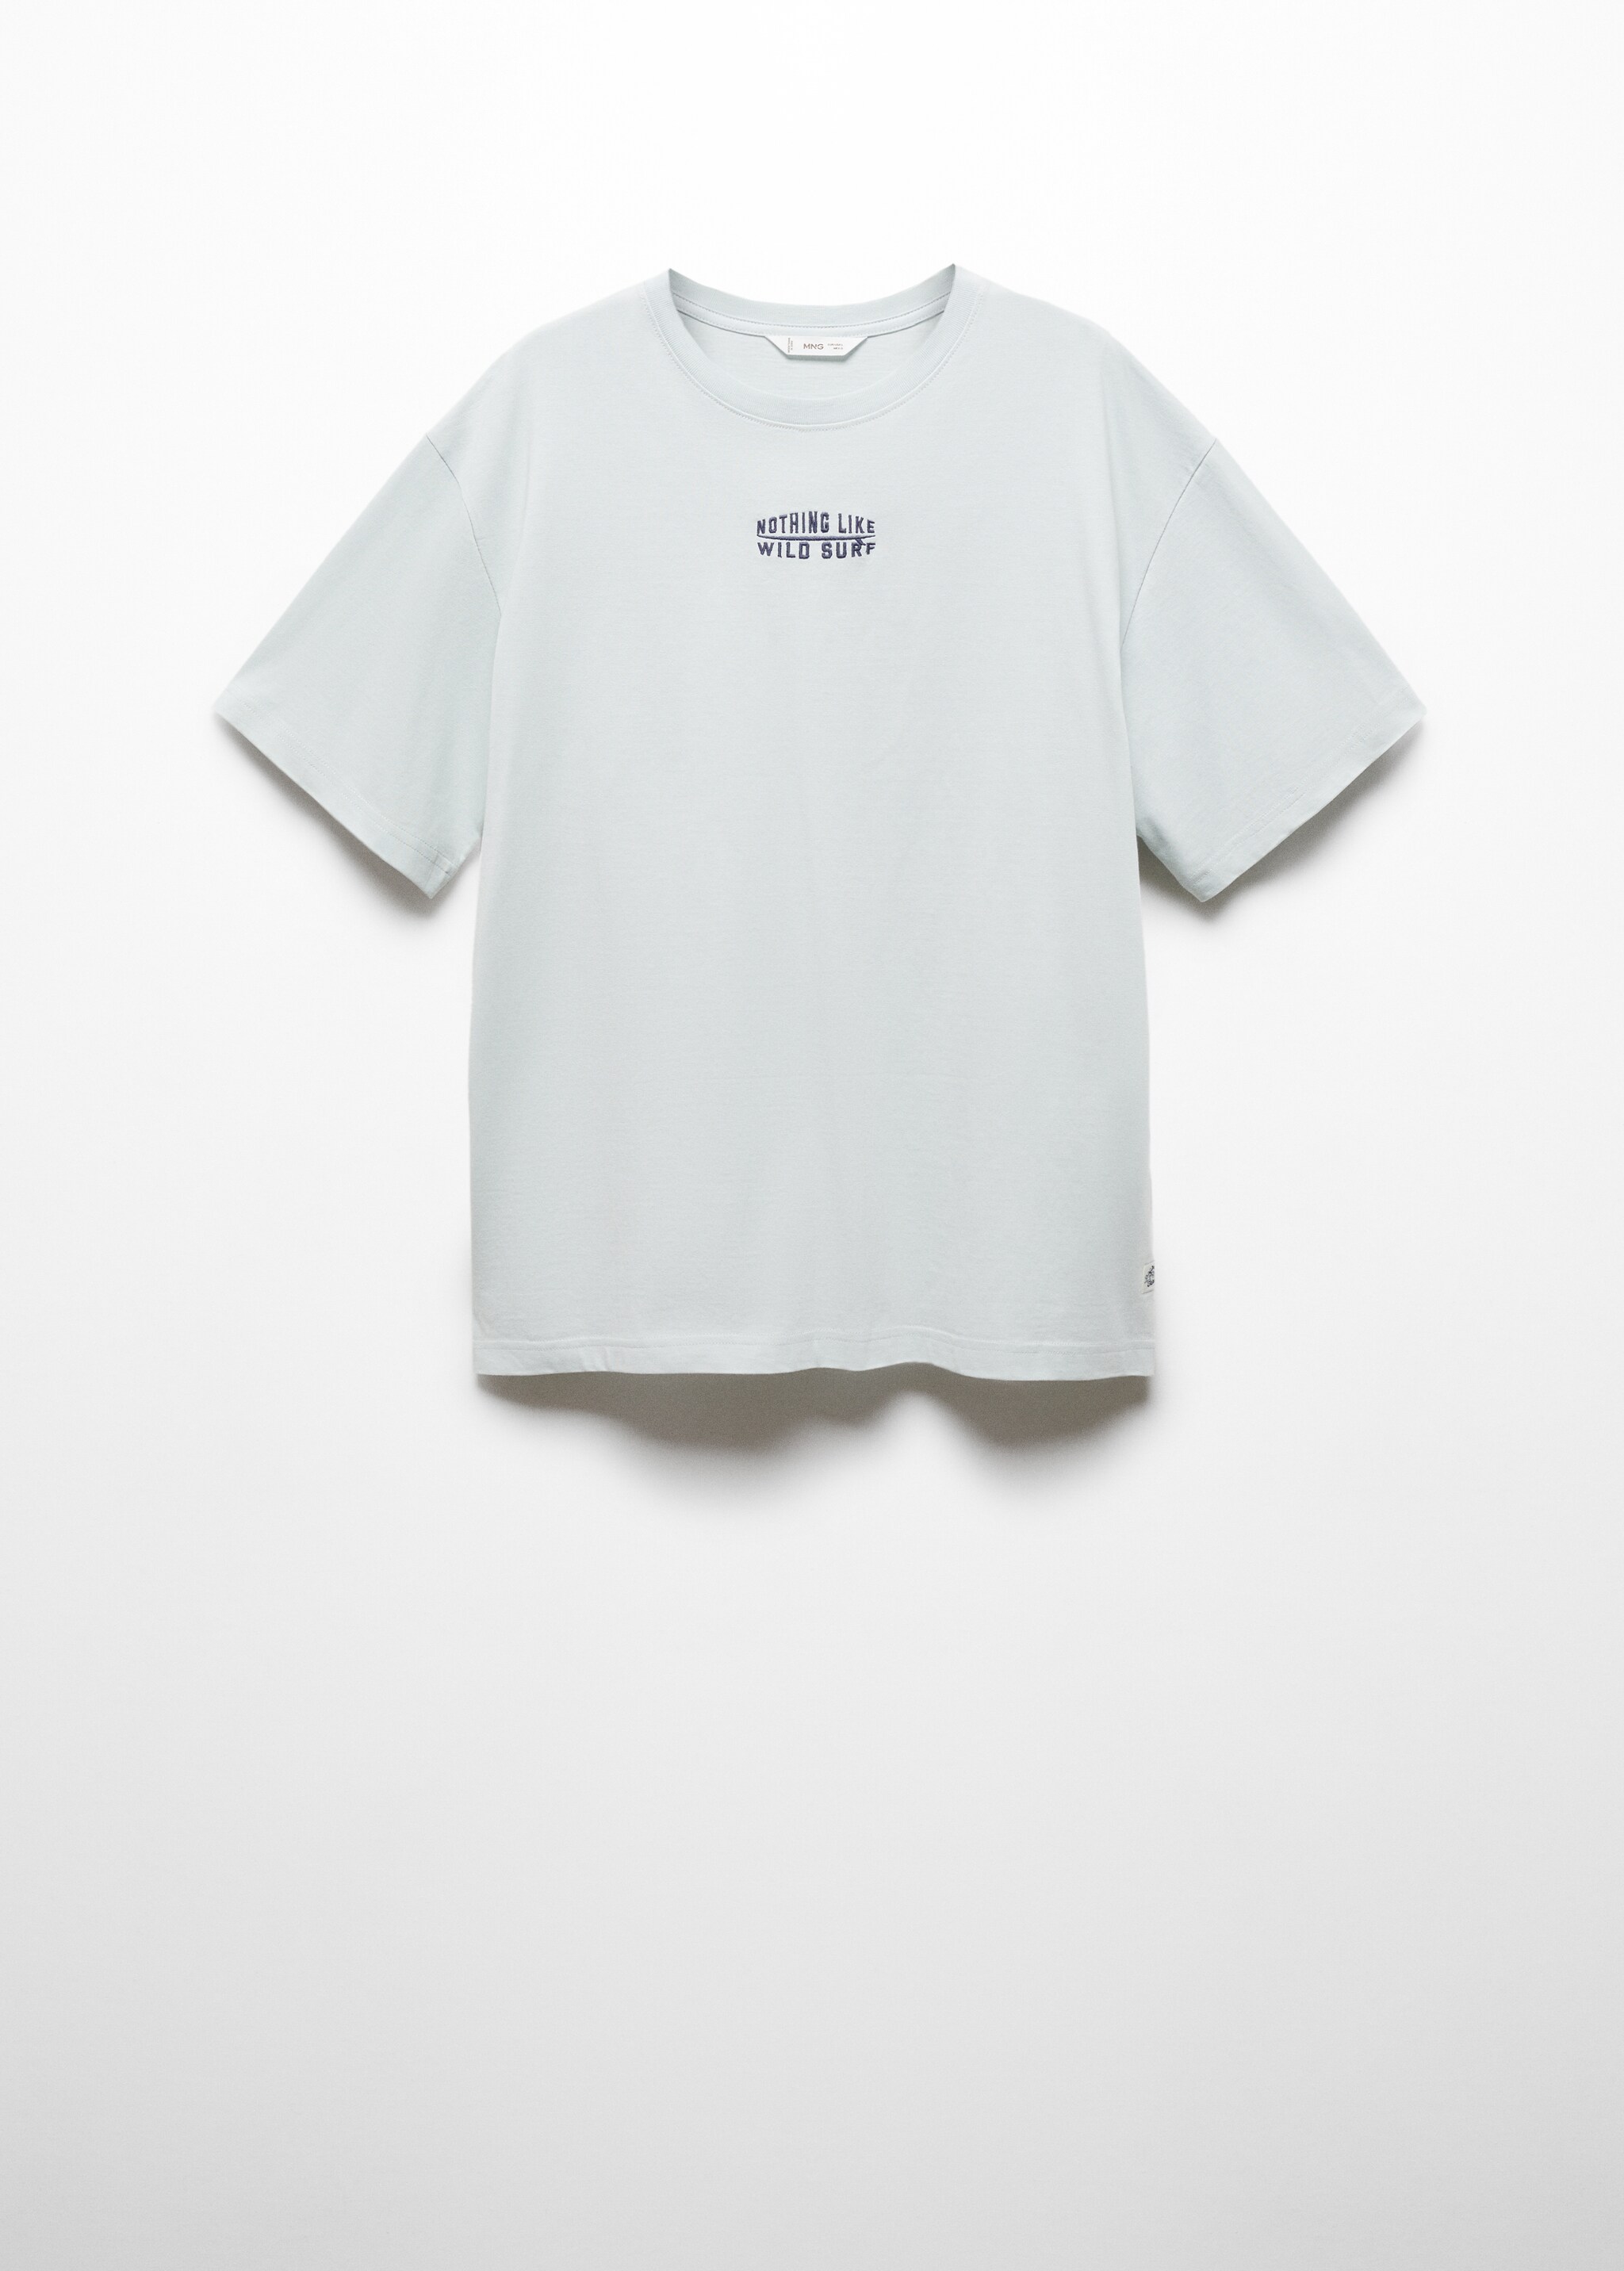 Camiseta algodón mensaje bordado - Artículo sin modelo